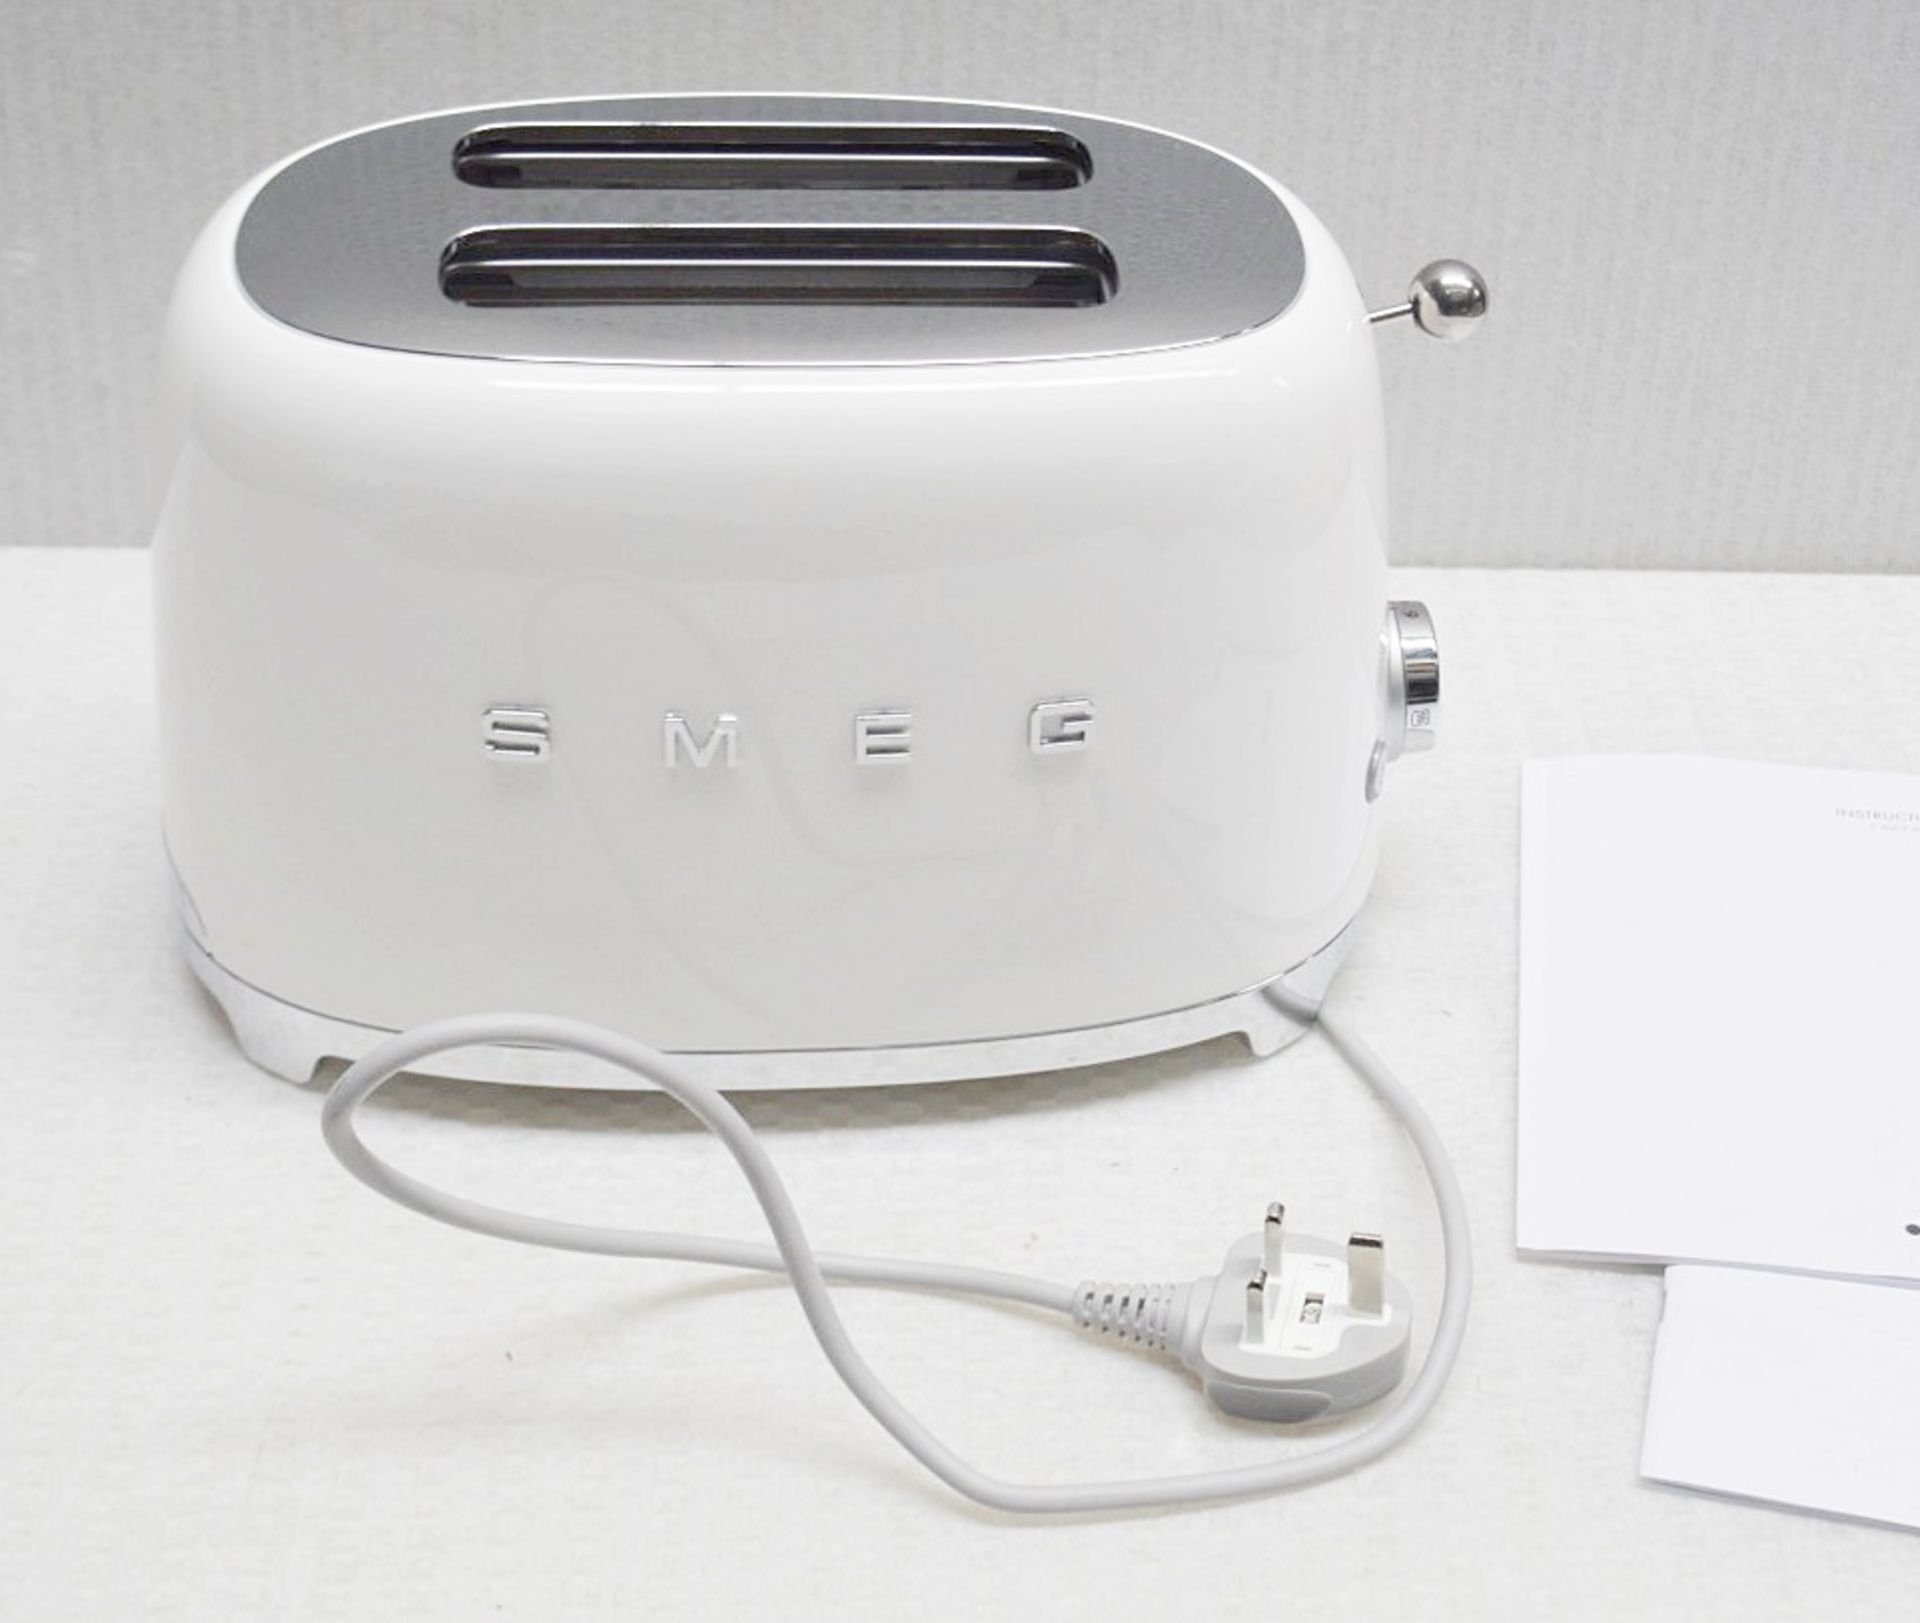 1 x SMEG Retro-style 2-Slot Toaster In White - Original Price £139.95 - Image 6 of 7